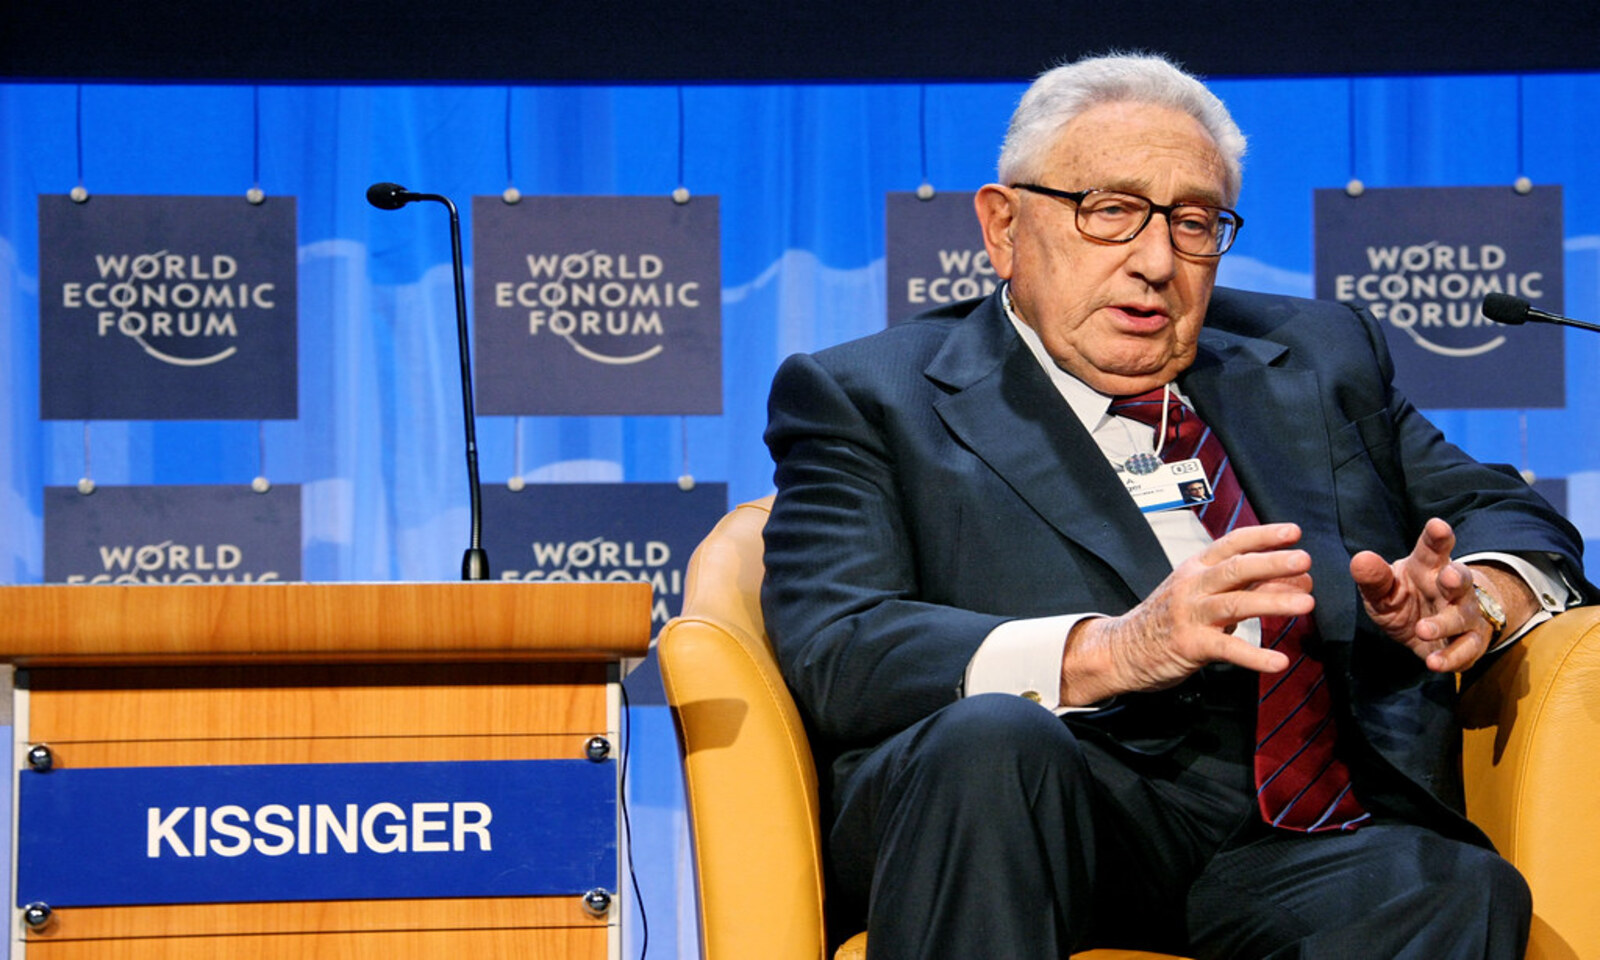 Dopo la morte Kissinger è celebrato da tutti. Oscurati errori e colpe